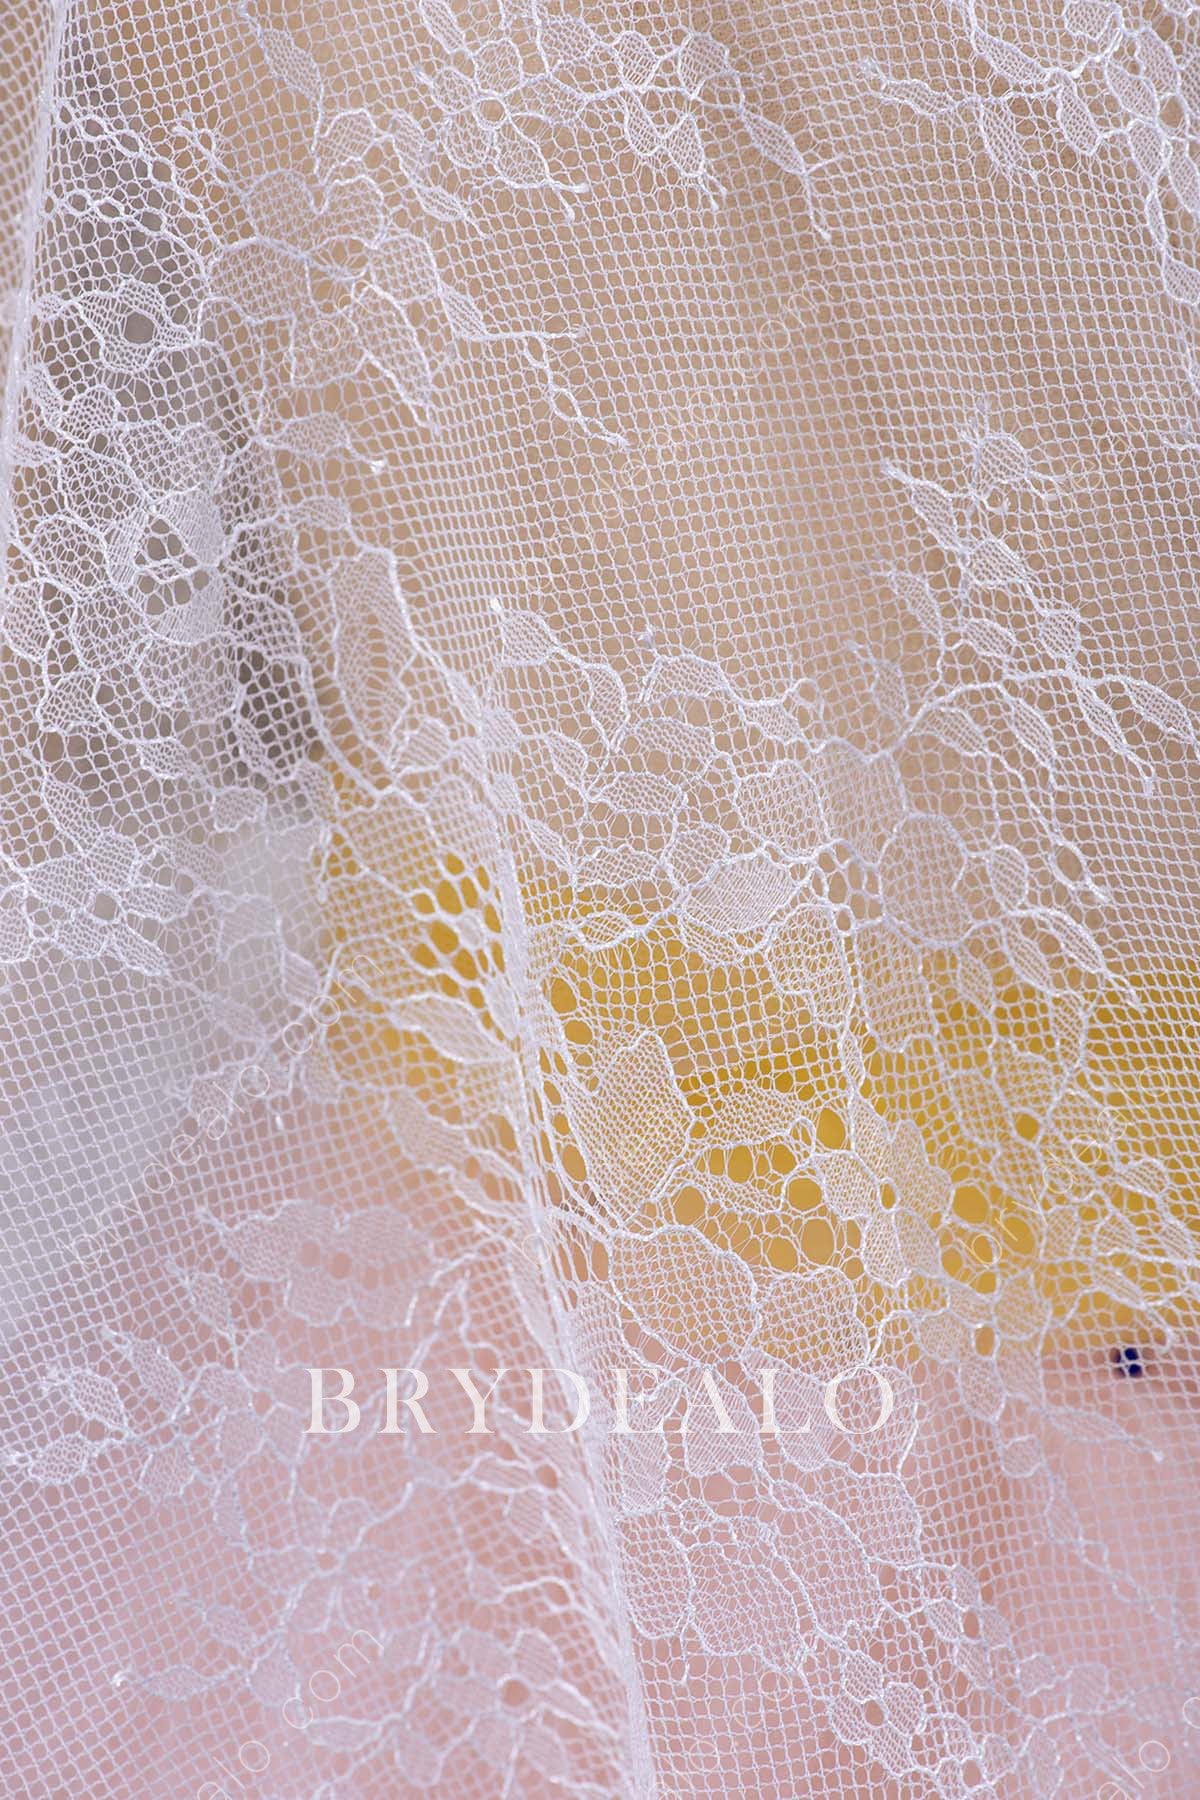 Botanic Bridal Lace Fabric for Wholesale